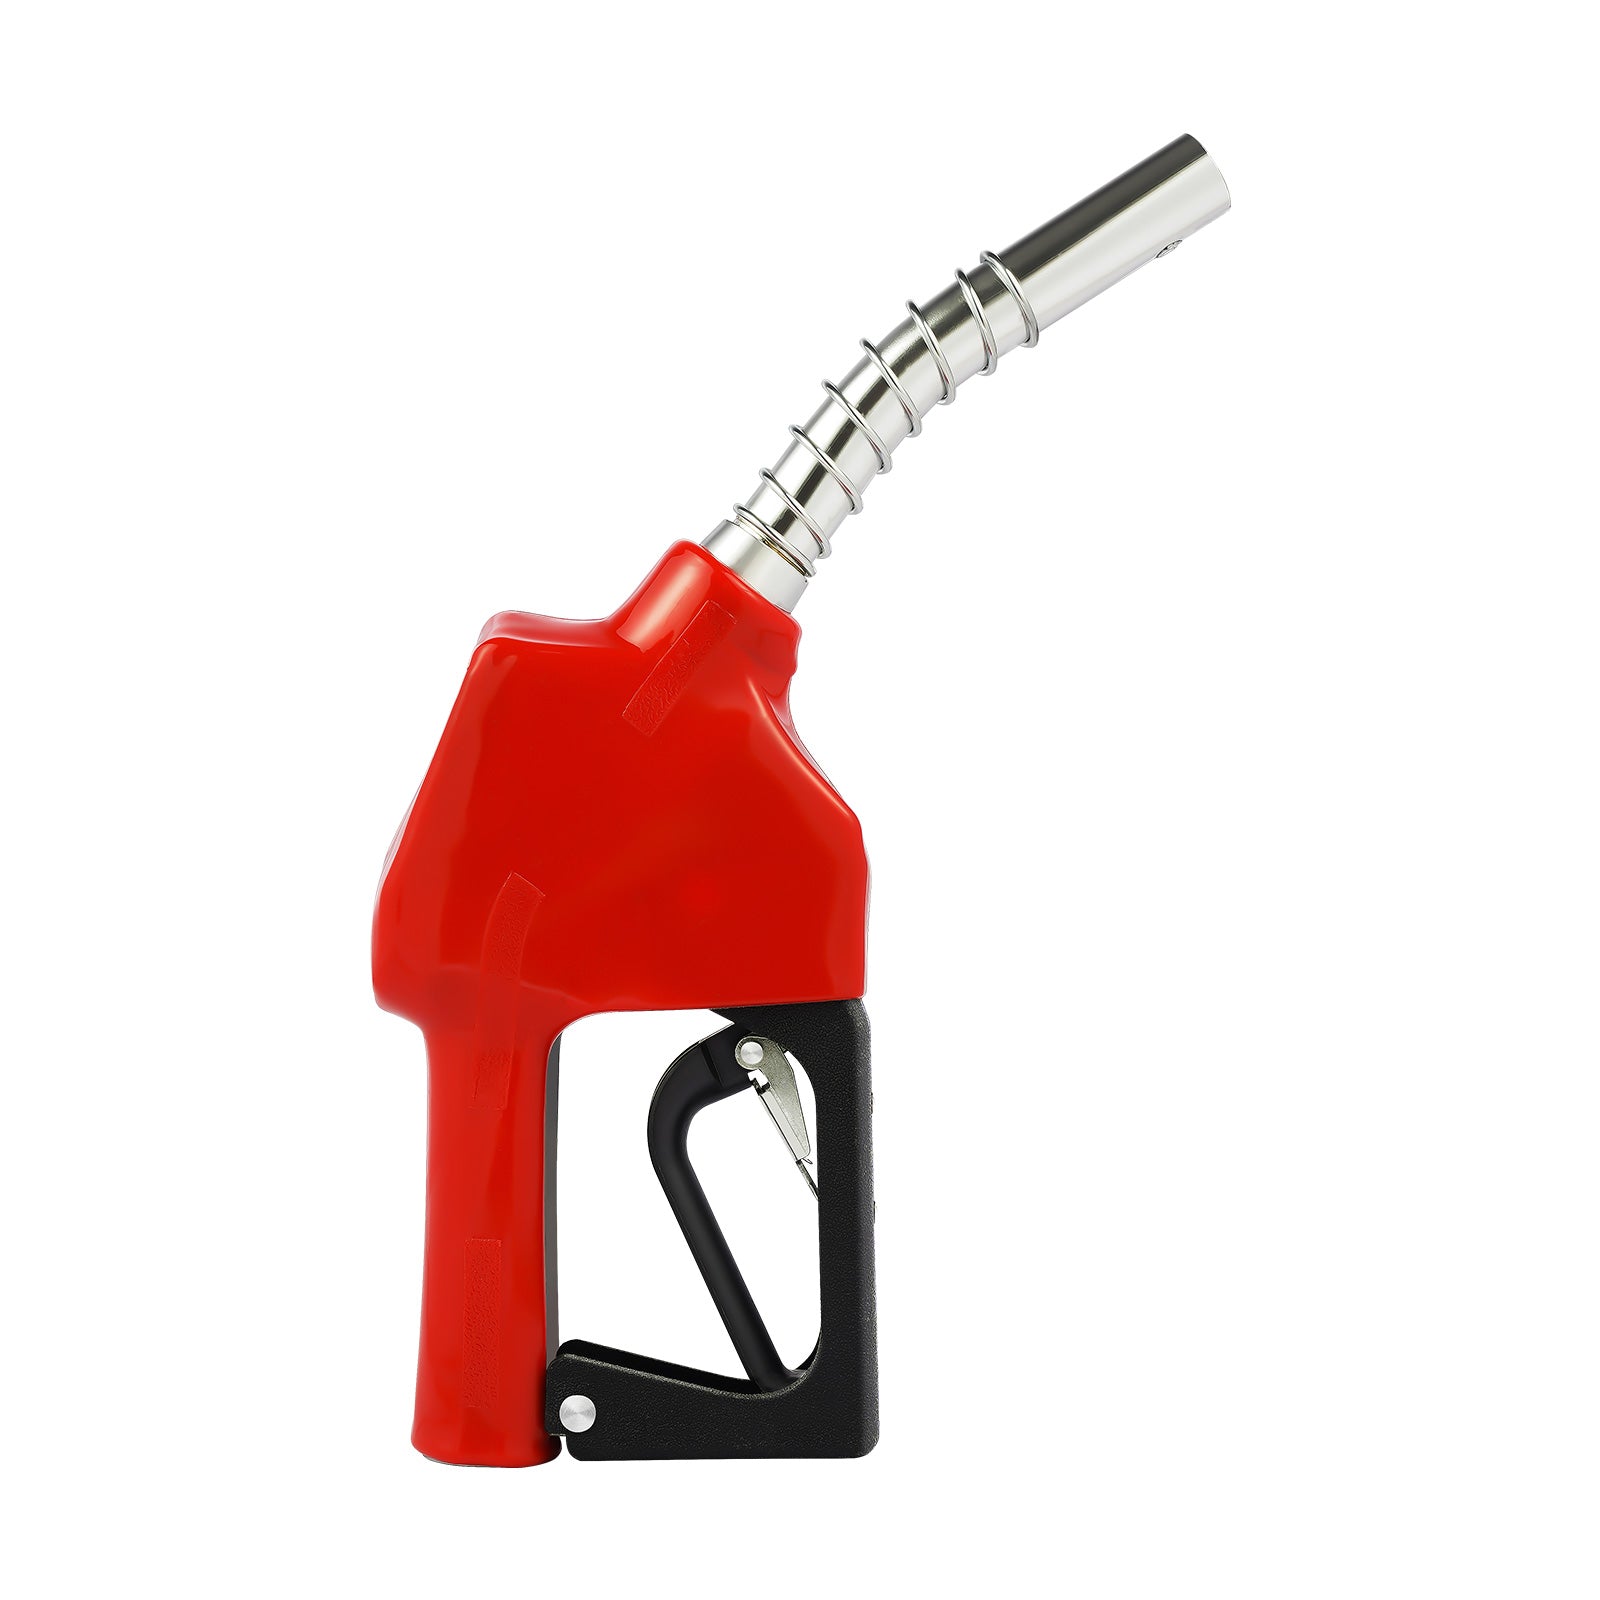 Pompa diesel autoadescante della pompa dell'olio